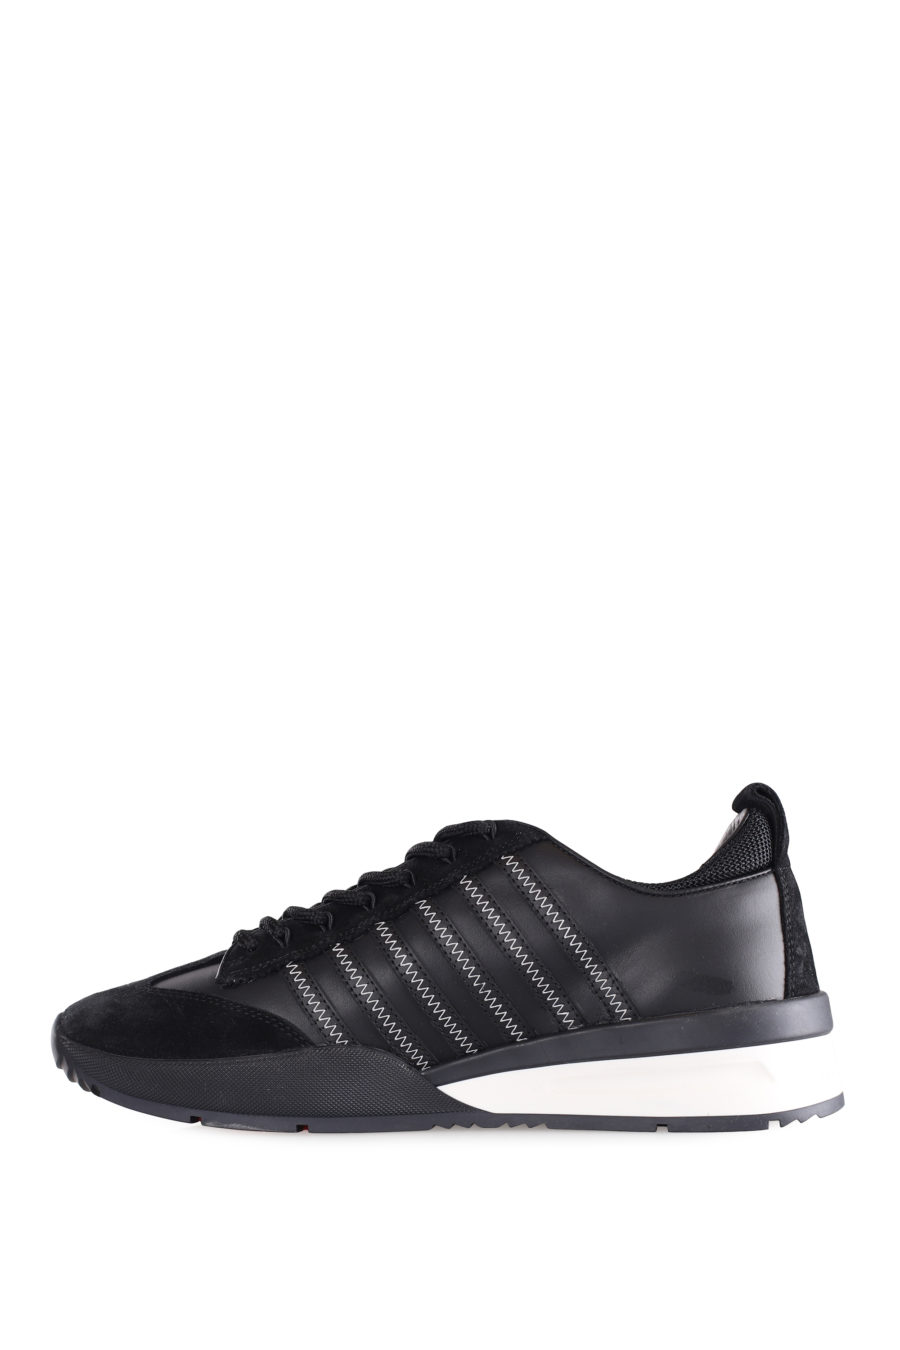 Zapatillas negras con lineas negras y logo blanco pequeño - IMG 9560